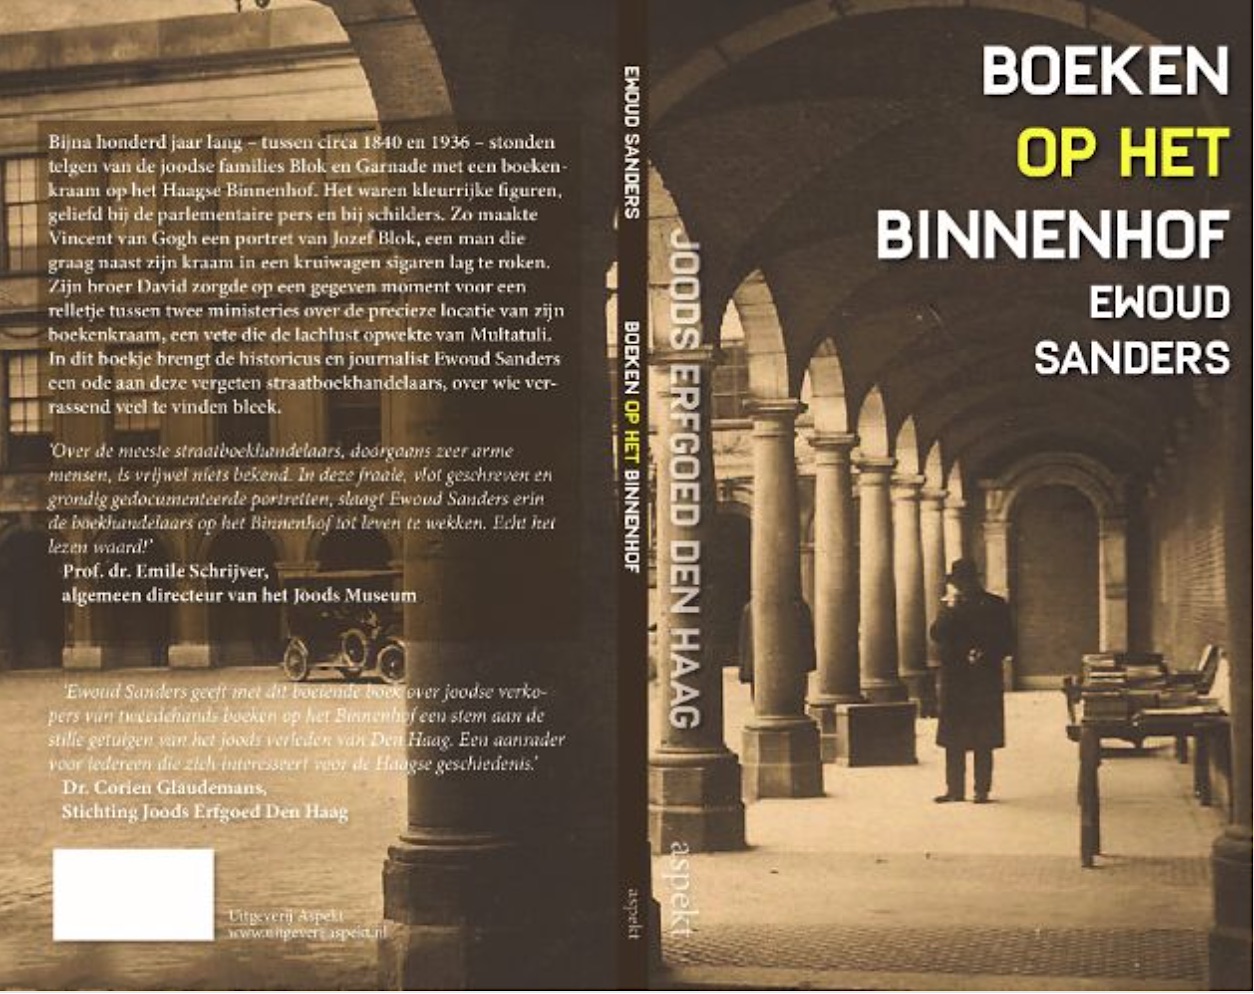 Boeken op het Binnenhof, boekpresentatie - Den Haag